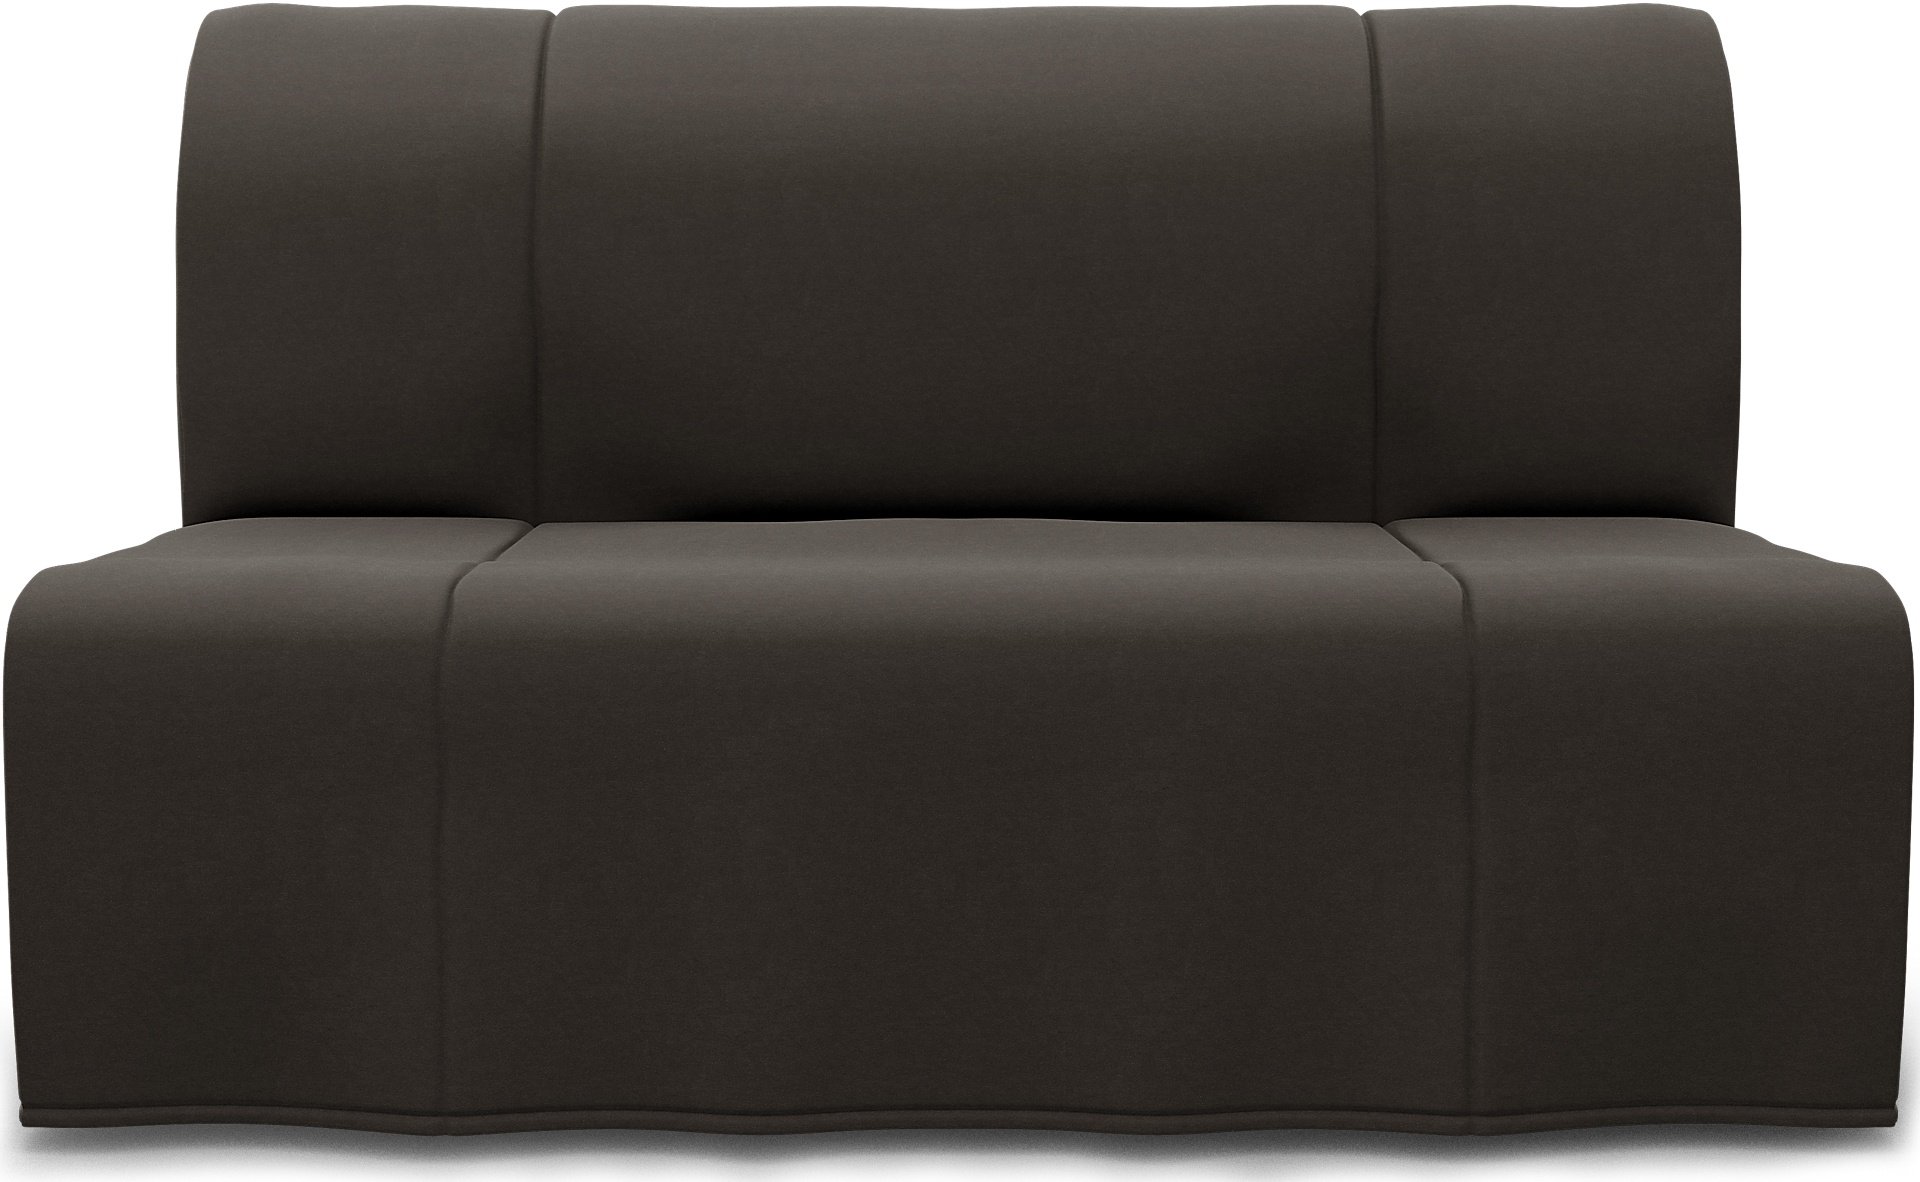 IKEA - Lycksele 2 Seater Bedsofa, Licorice, Velvet - Bemz